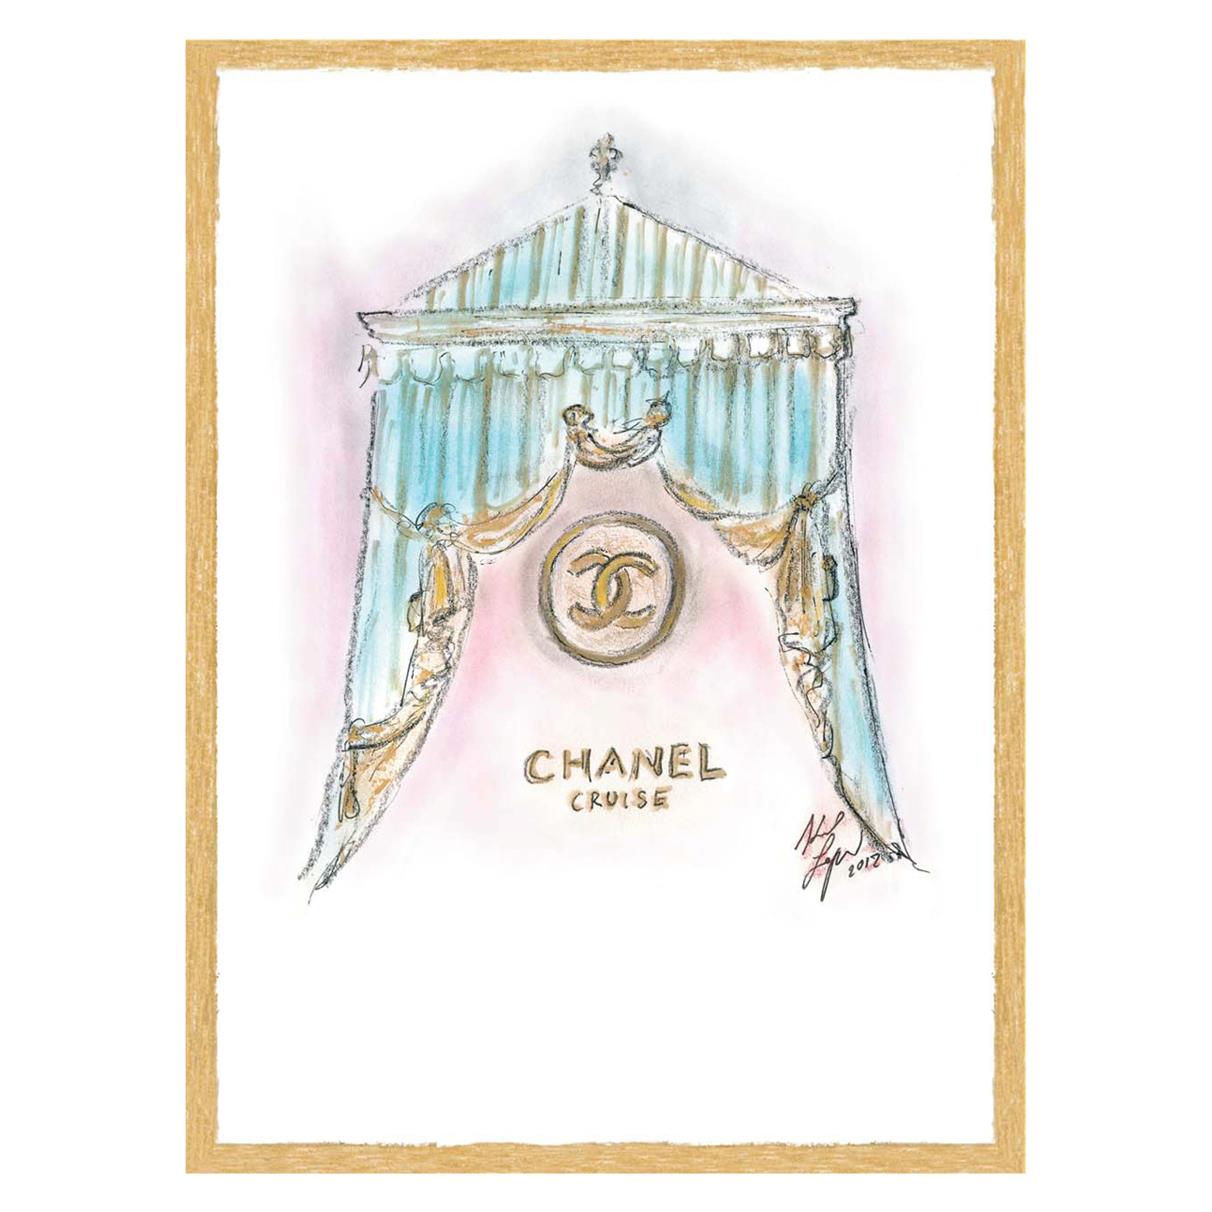 Chanel Cruise 2012/13 Fashion Show Invite